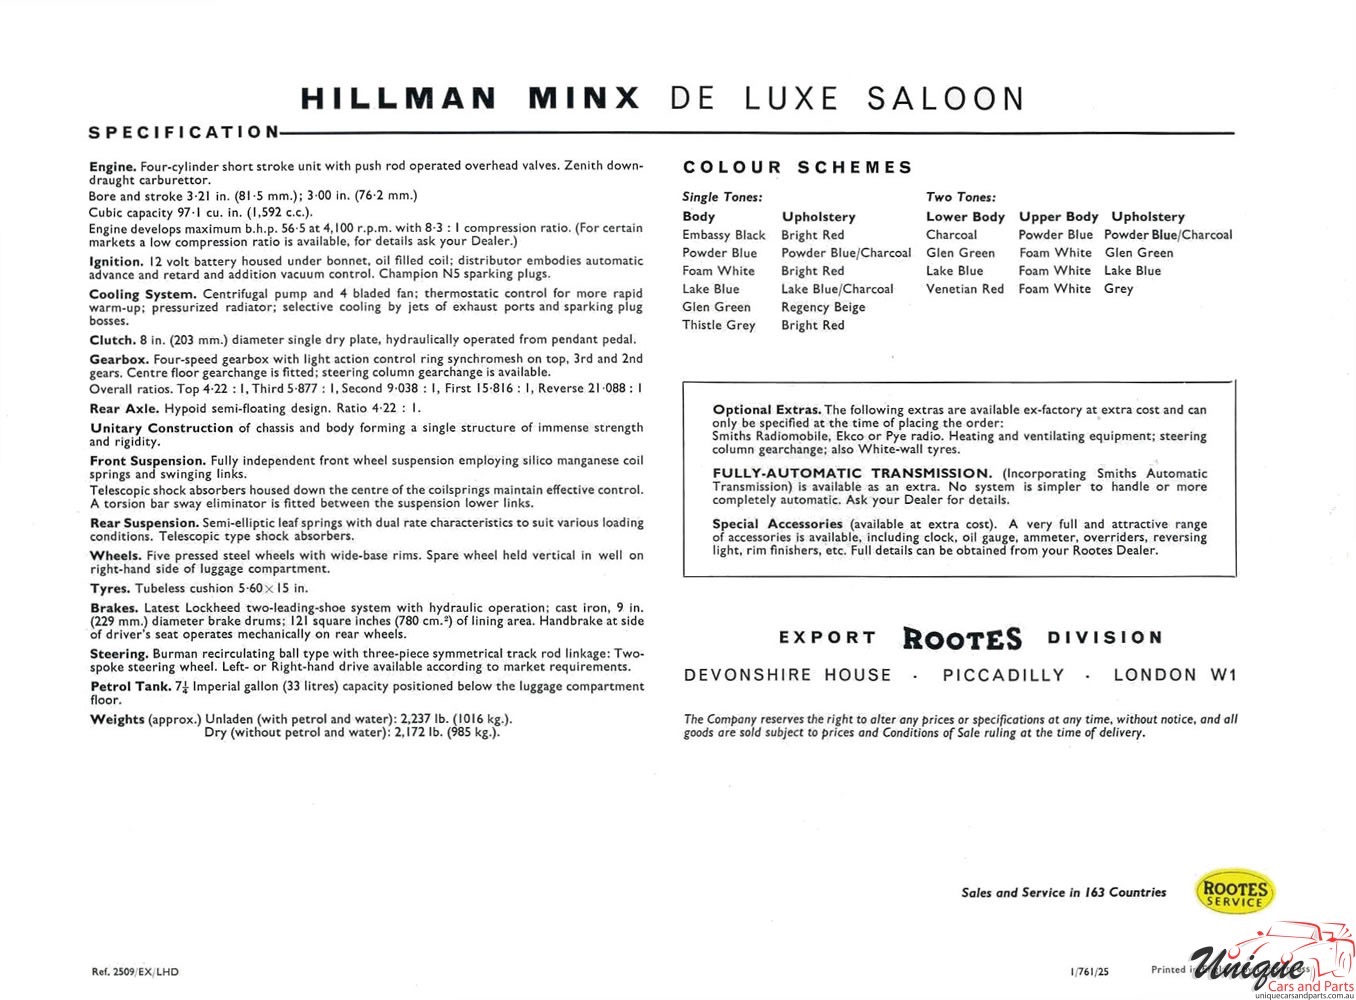 1961 Hillman Minx Brochure Page 1